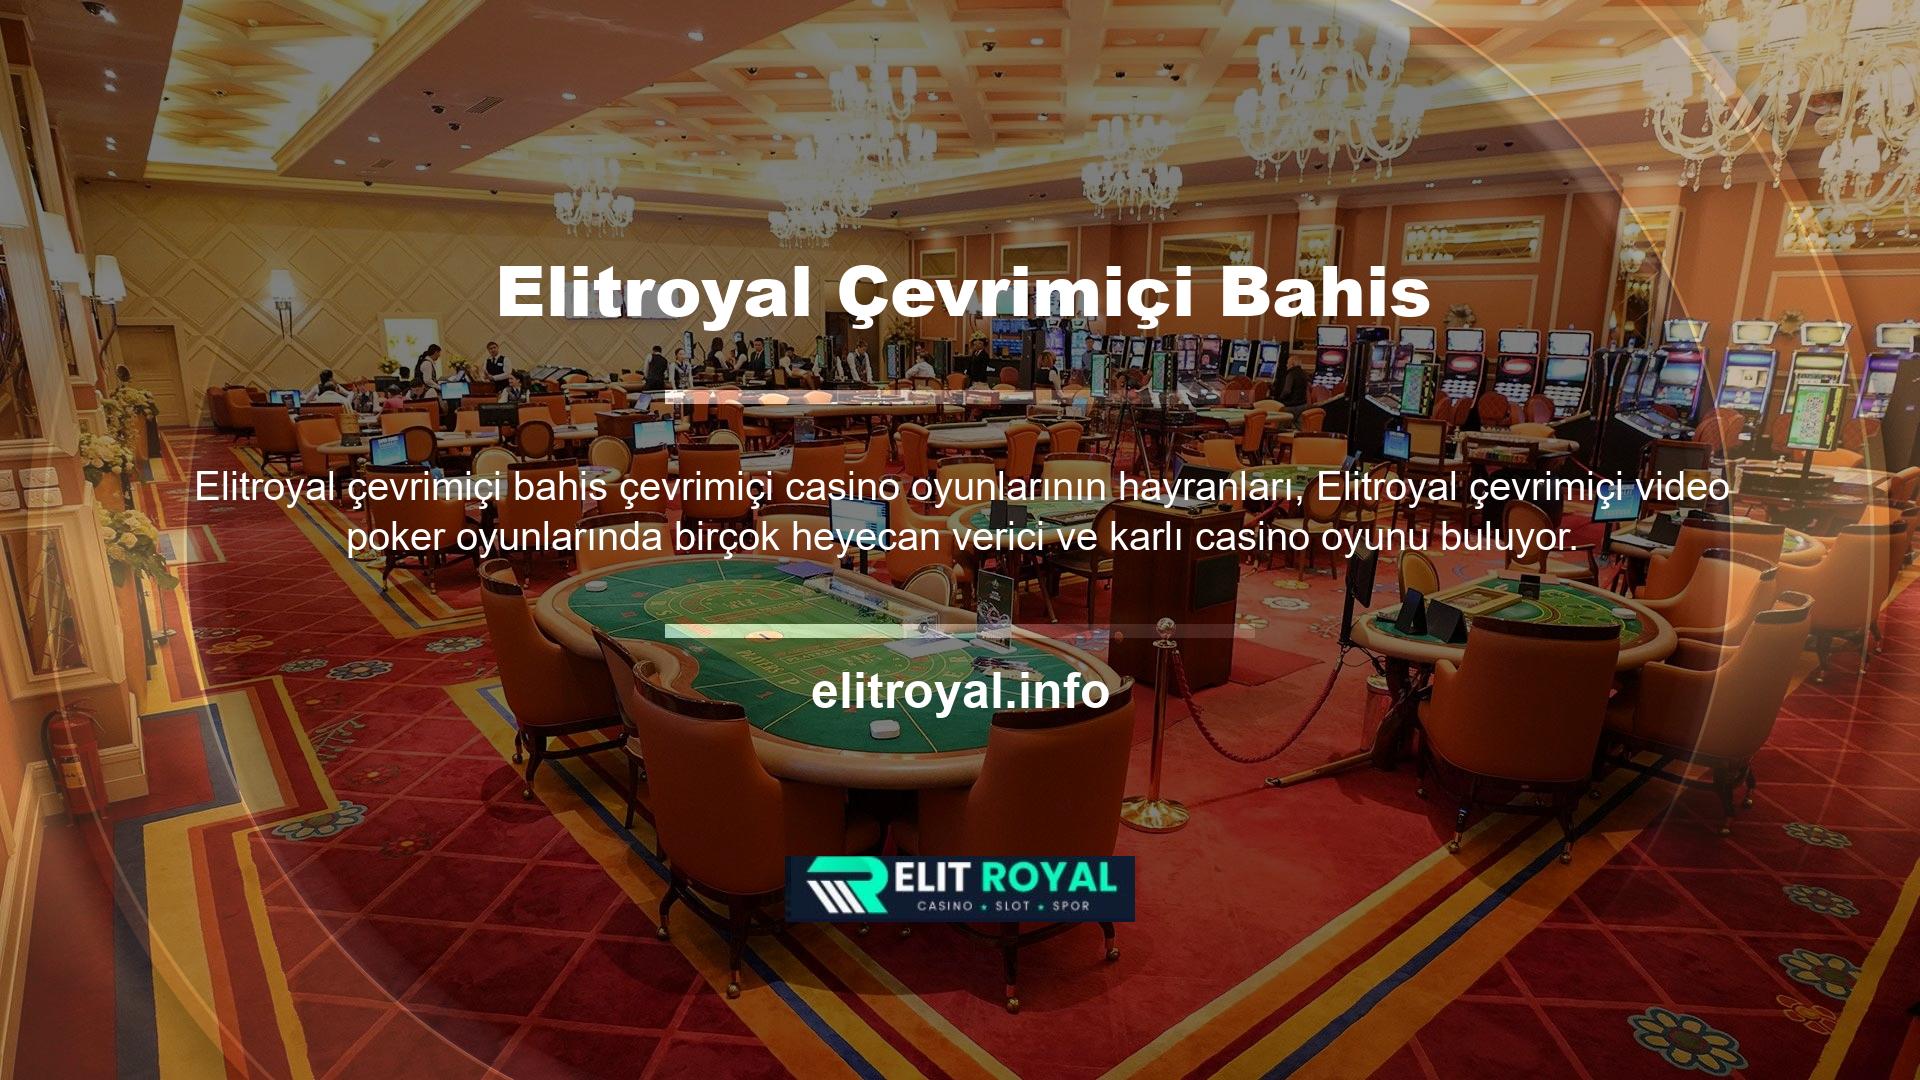 Poker, Elitroyal web sitesinde canlı oyuncular tarafından özel olarak oynanan en ünlü masa oyunlarından biridir